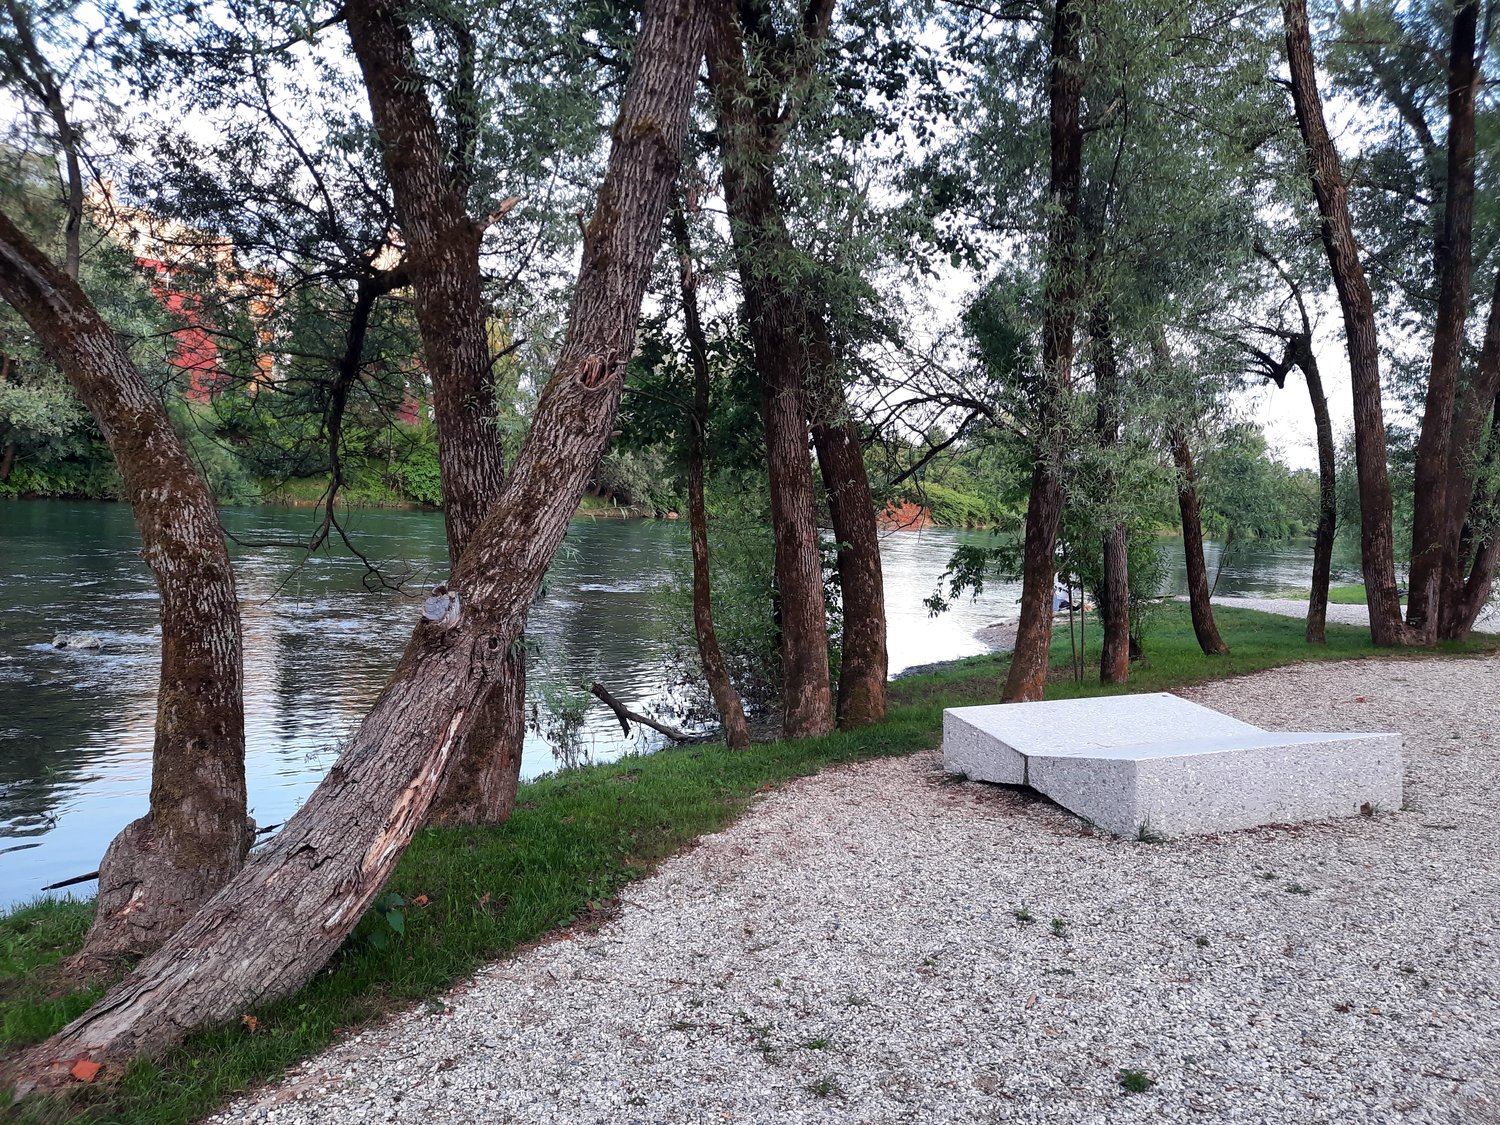 Nova plaža ob Savi, v bližini kopališča Laguna, v Ljubljani; na fotografiji betonski ležalnik na prodnati plaži in v zavetju dreves ob reki